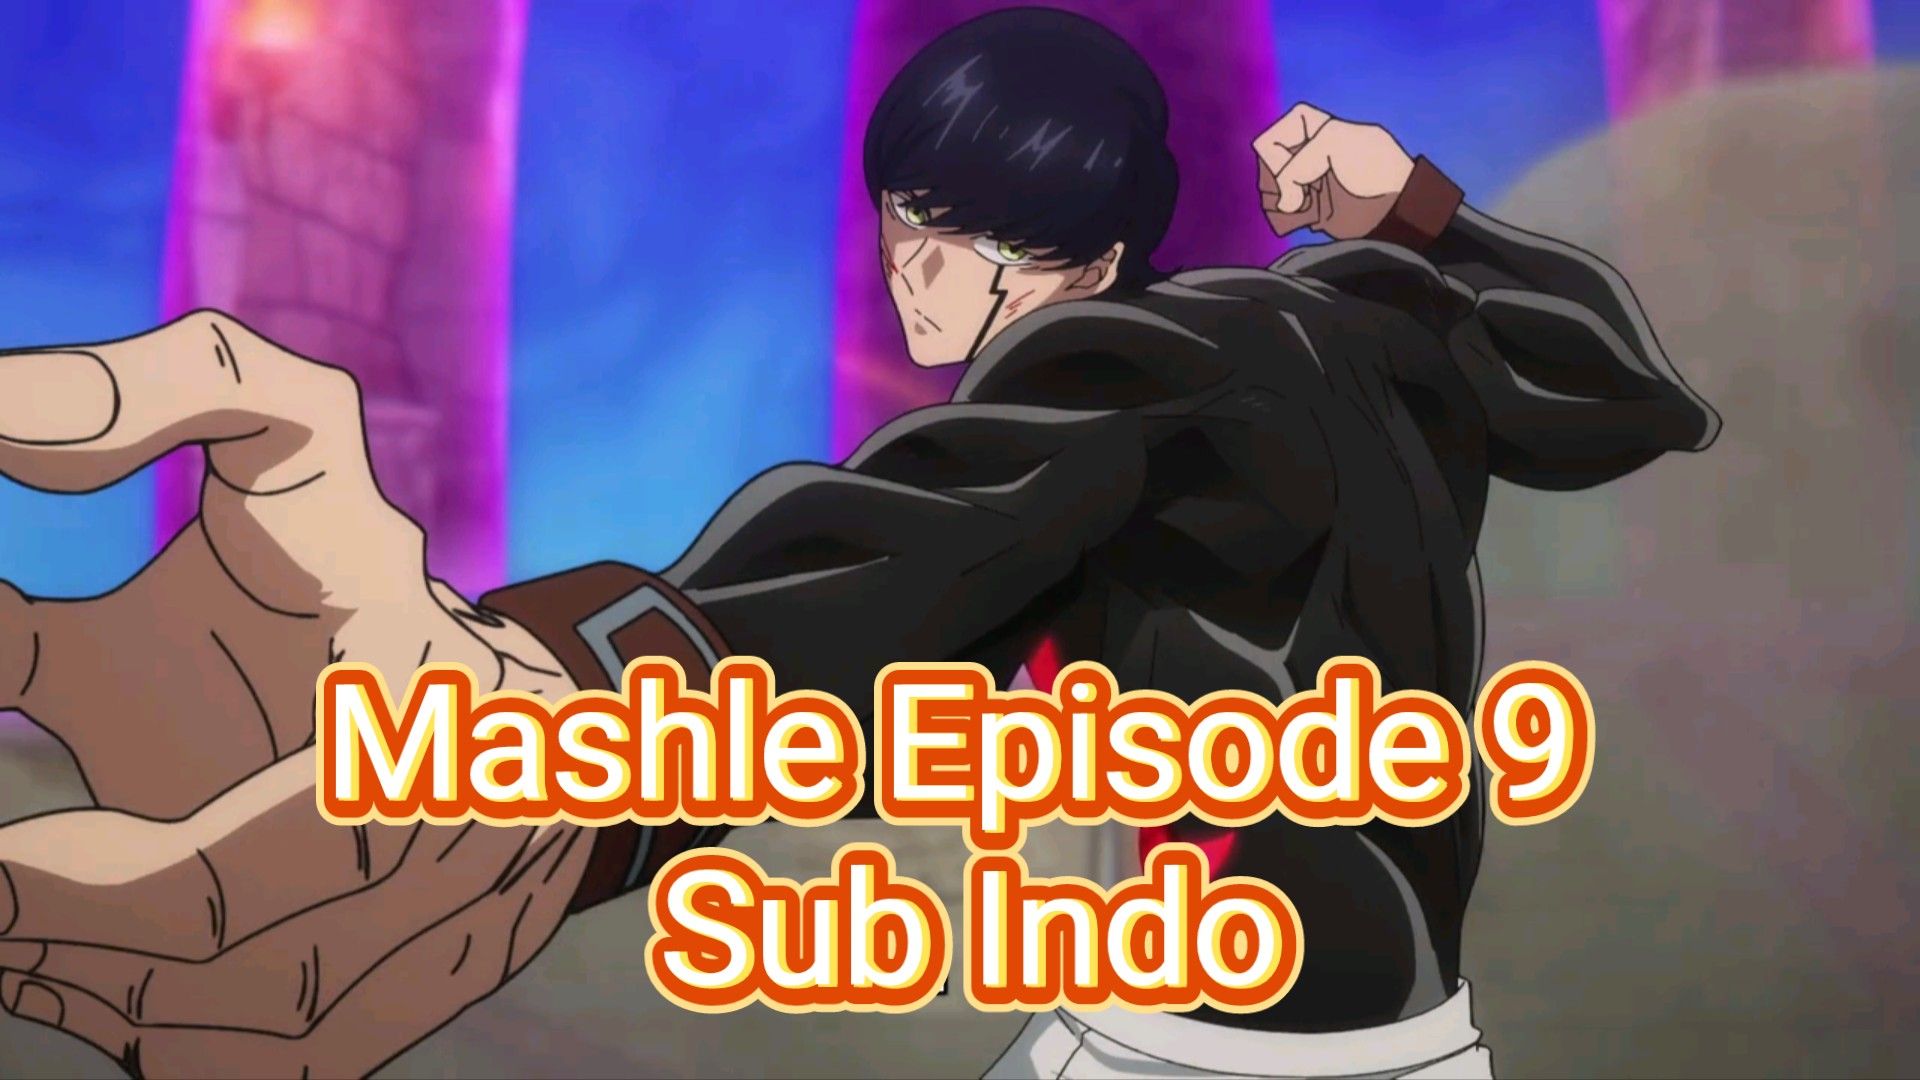 Mashle Episode 9 Sub Indo - BiliBili